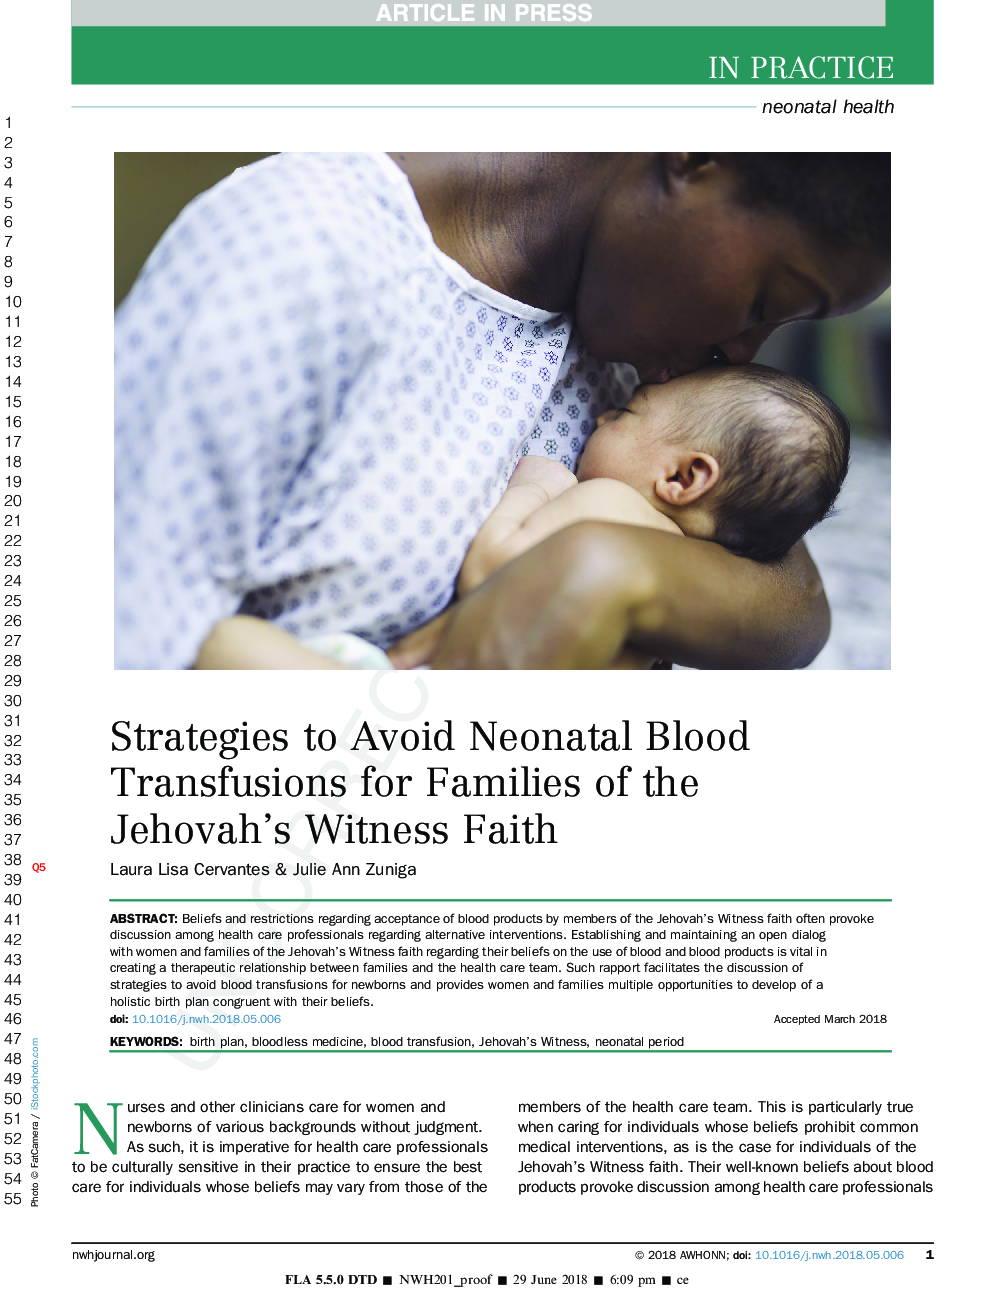 راهکارهایی برای جلوگیری از انتقال خون نوزادان به خانواده های ایمان شهادت یهوه 